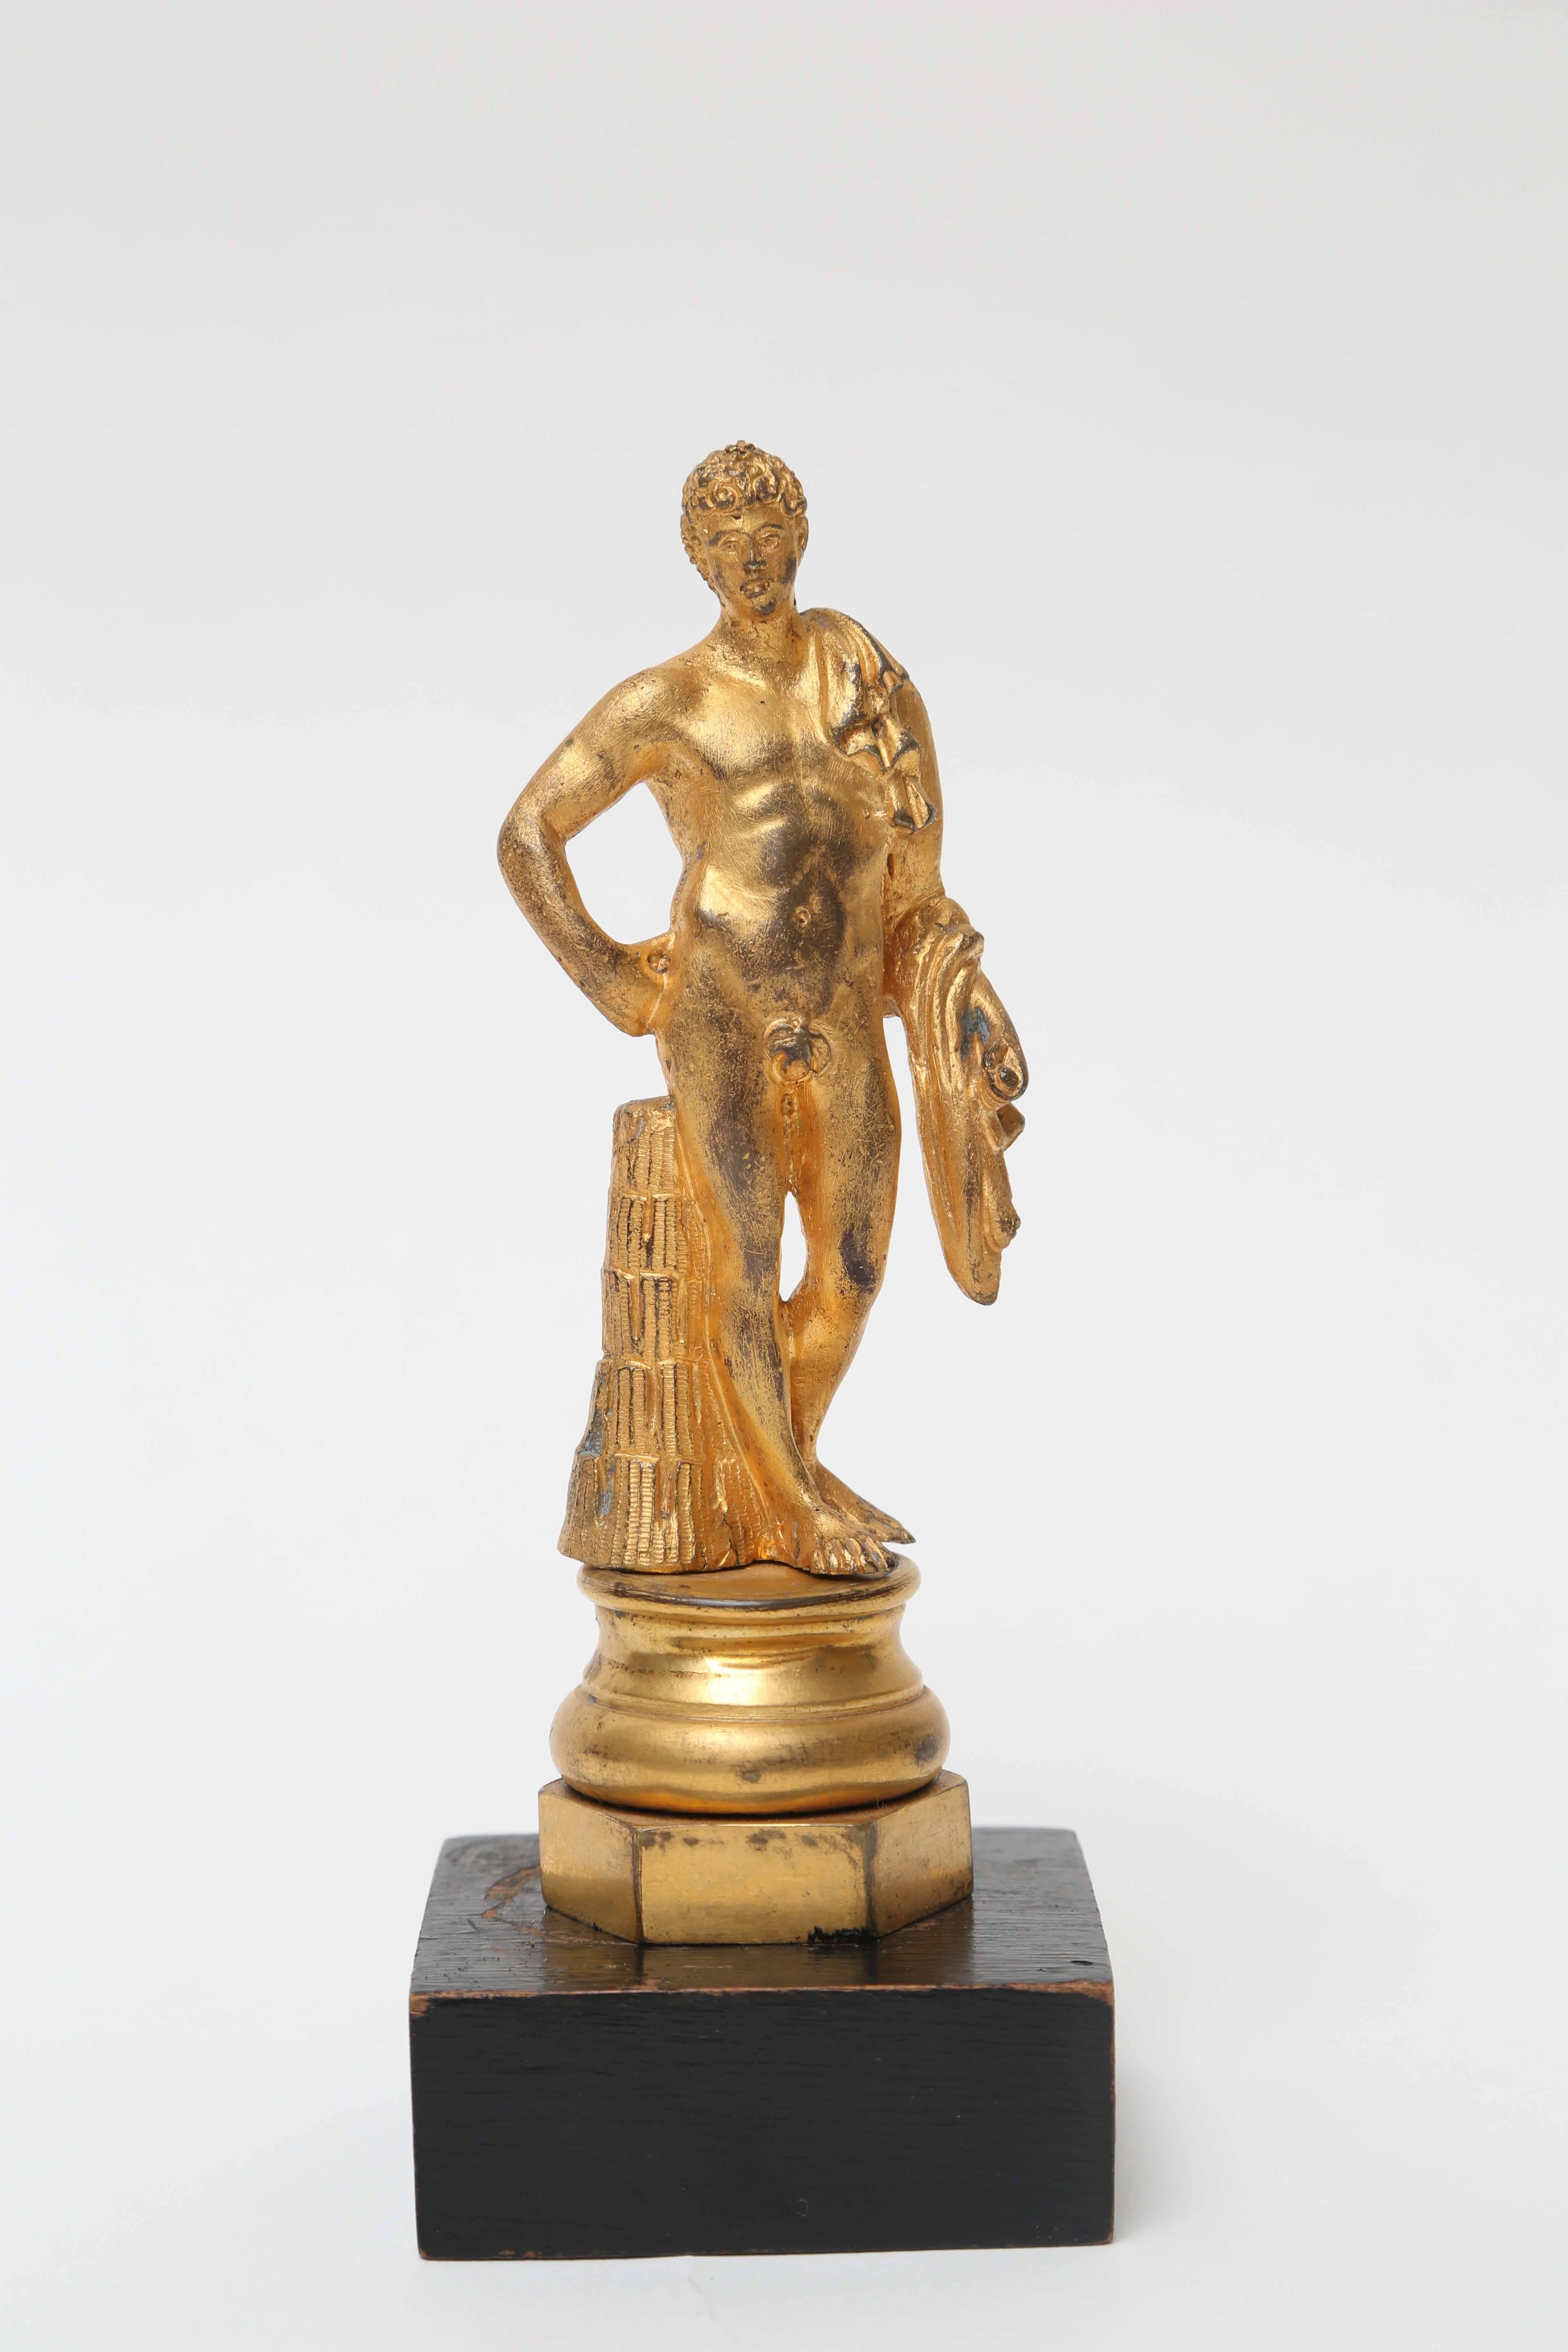 Die vergoldete Bronzefigur des Antinoos ist auf einem runden Sockel aus vergoldeter Bronze montiert, der auf einem sechseckigen Sockel aus vergoldeter Bronze steht, der auf einem Holzsockel befestigt ist.